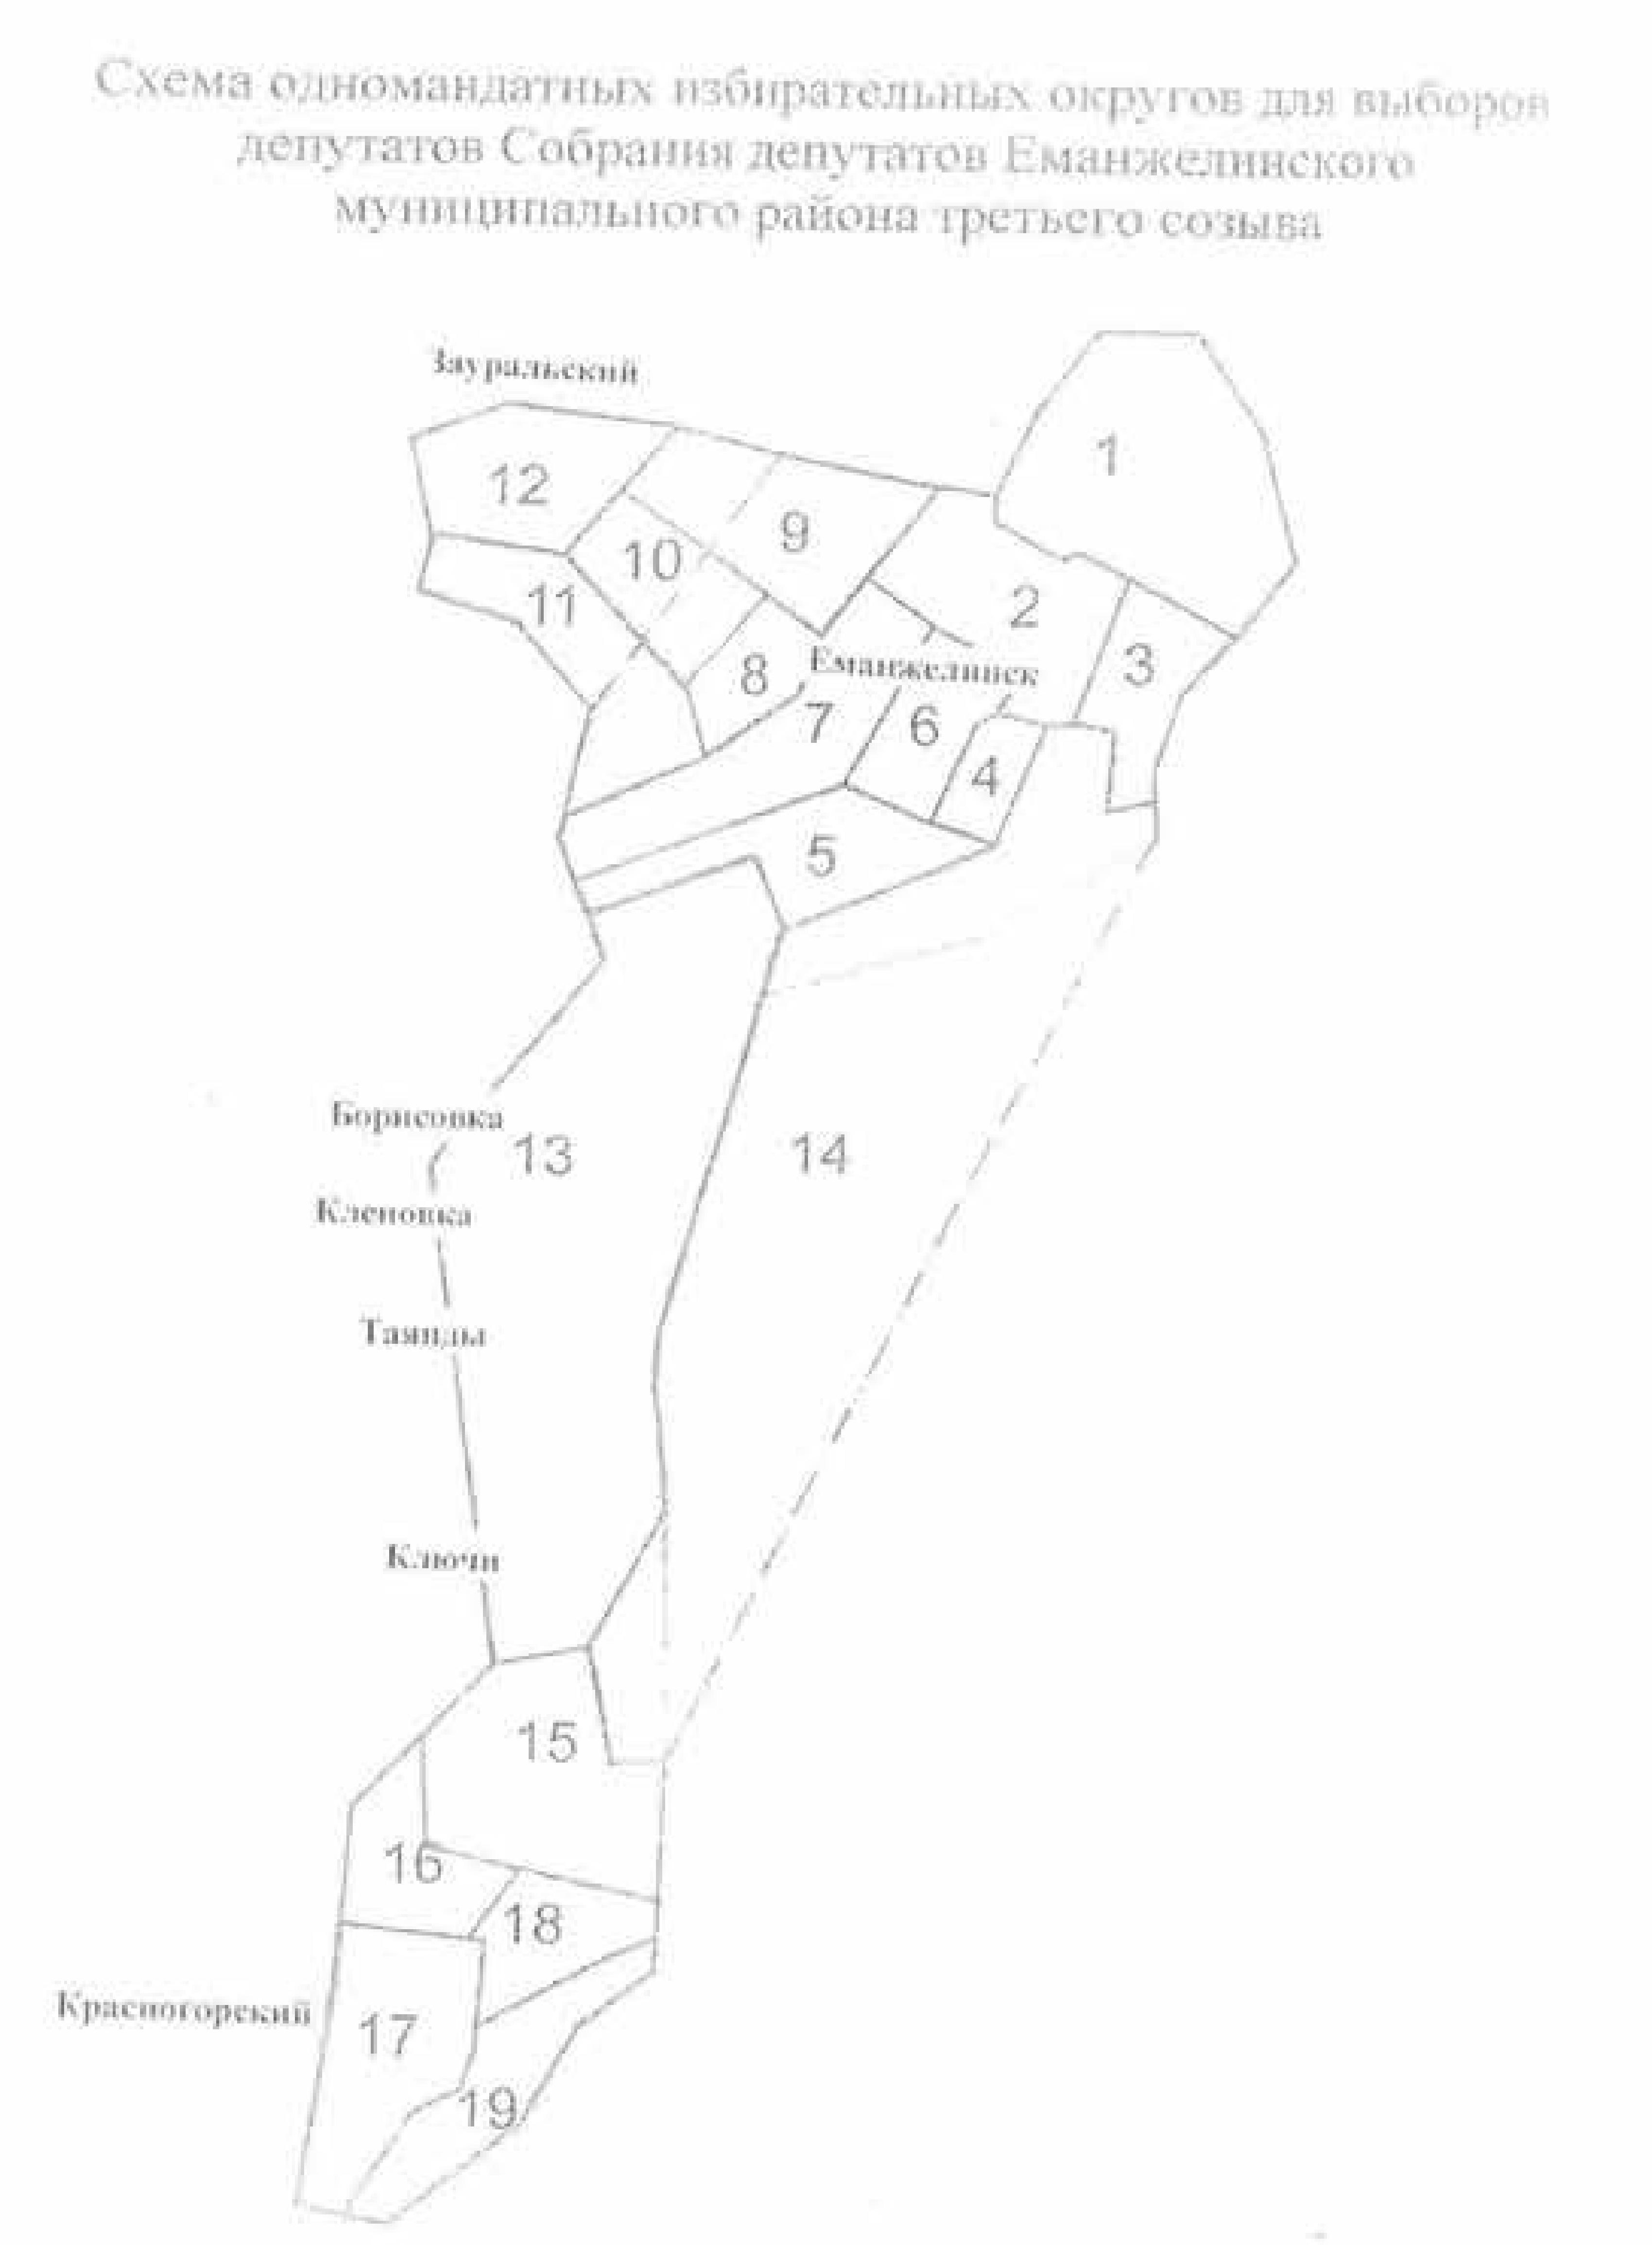 Графическая схема избирательных округов Еманжелинского района Челябинской области